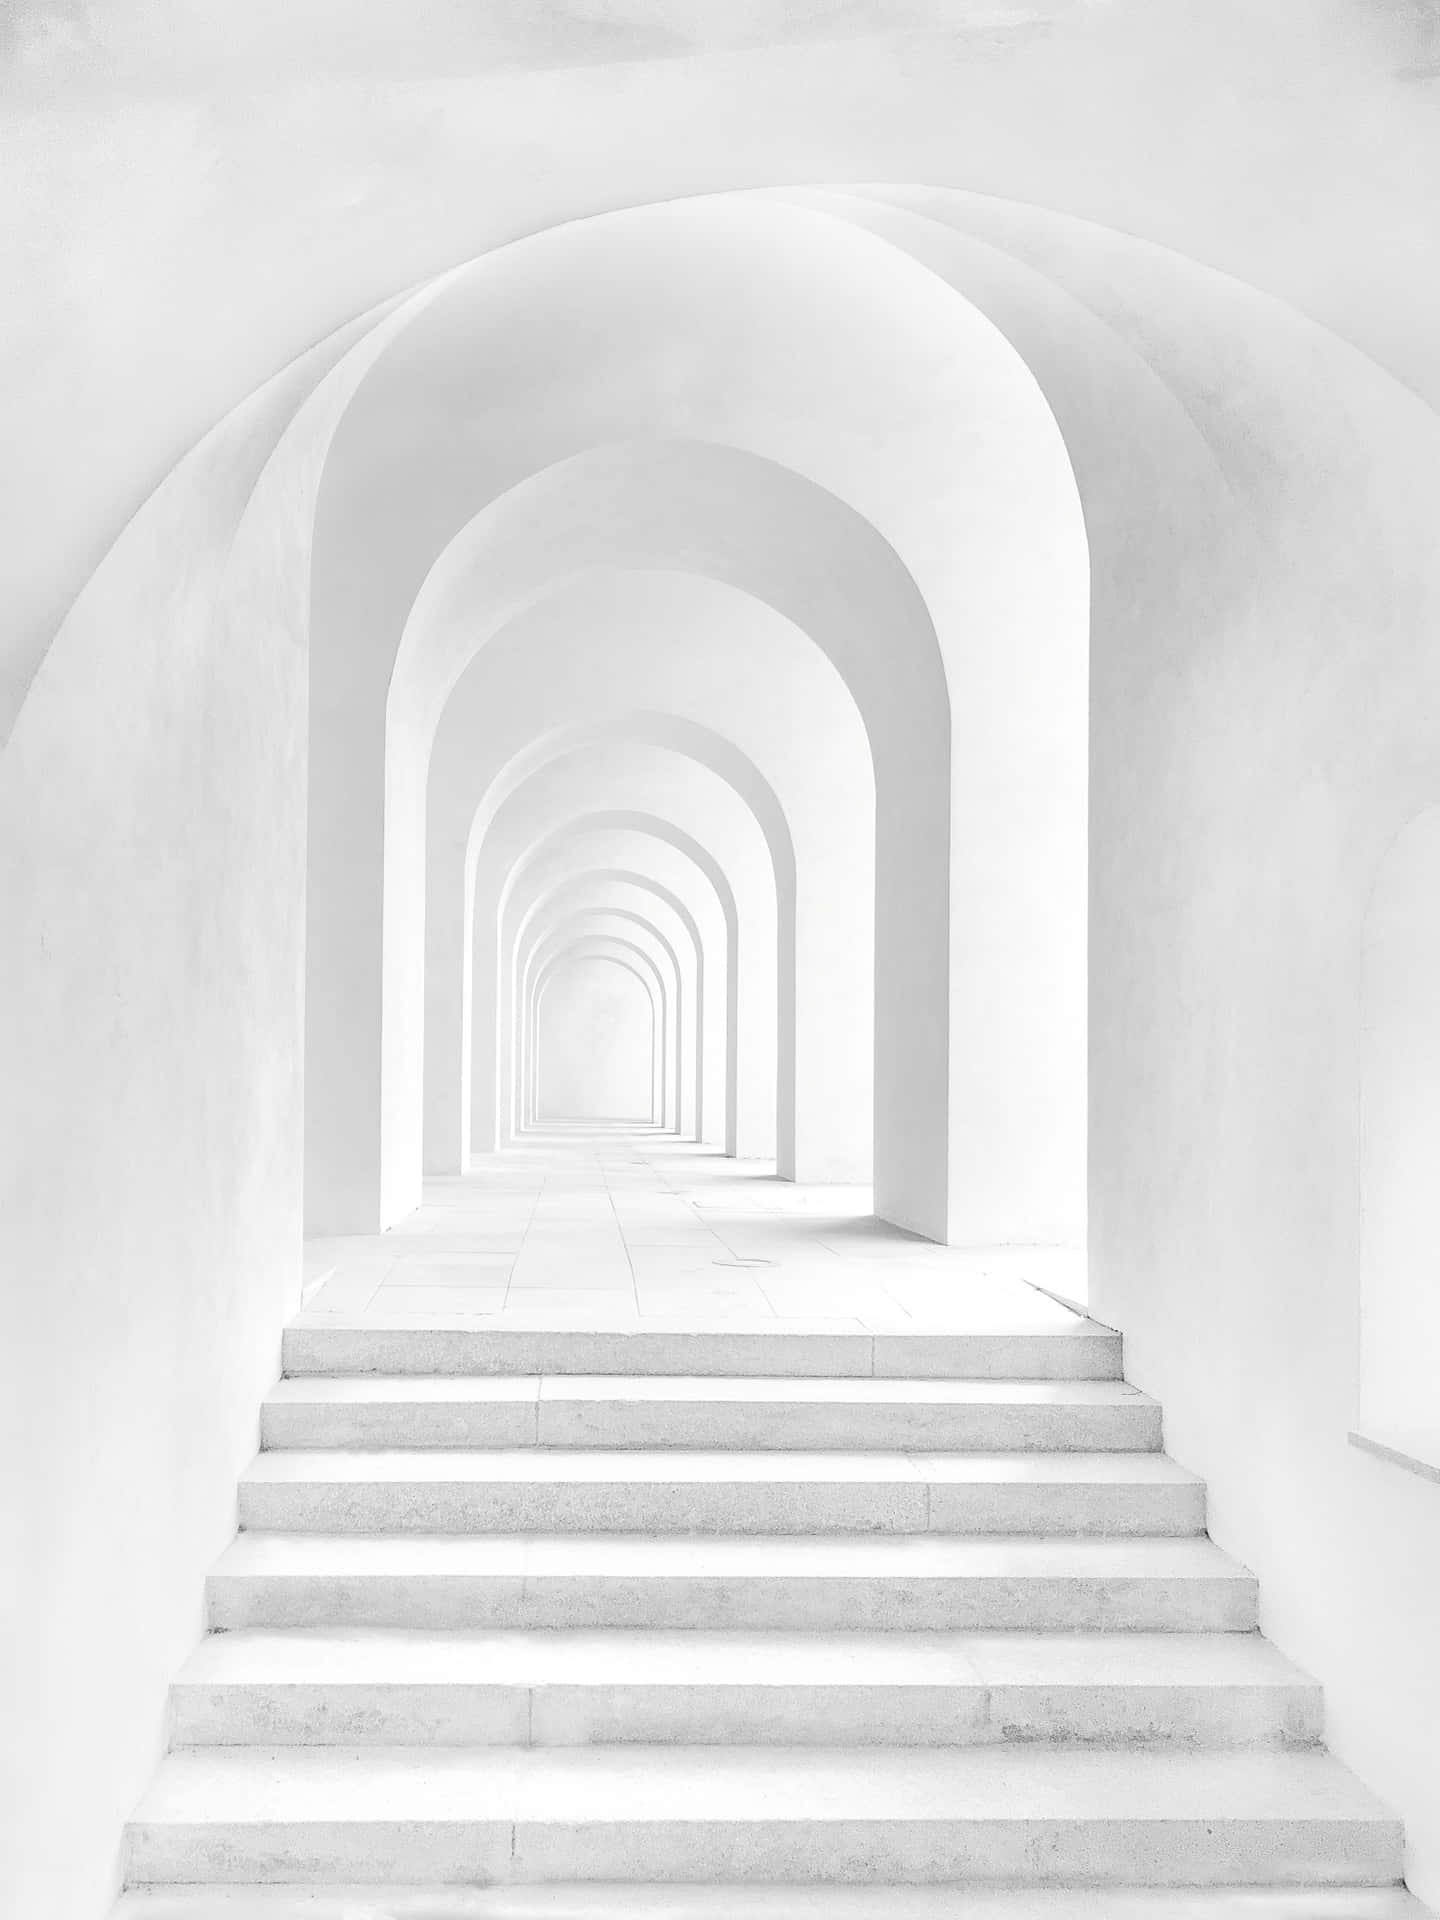 Imagende Una Escalera Blanca Con Arco.